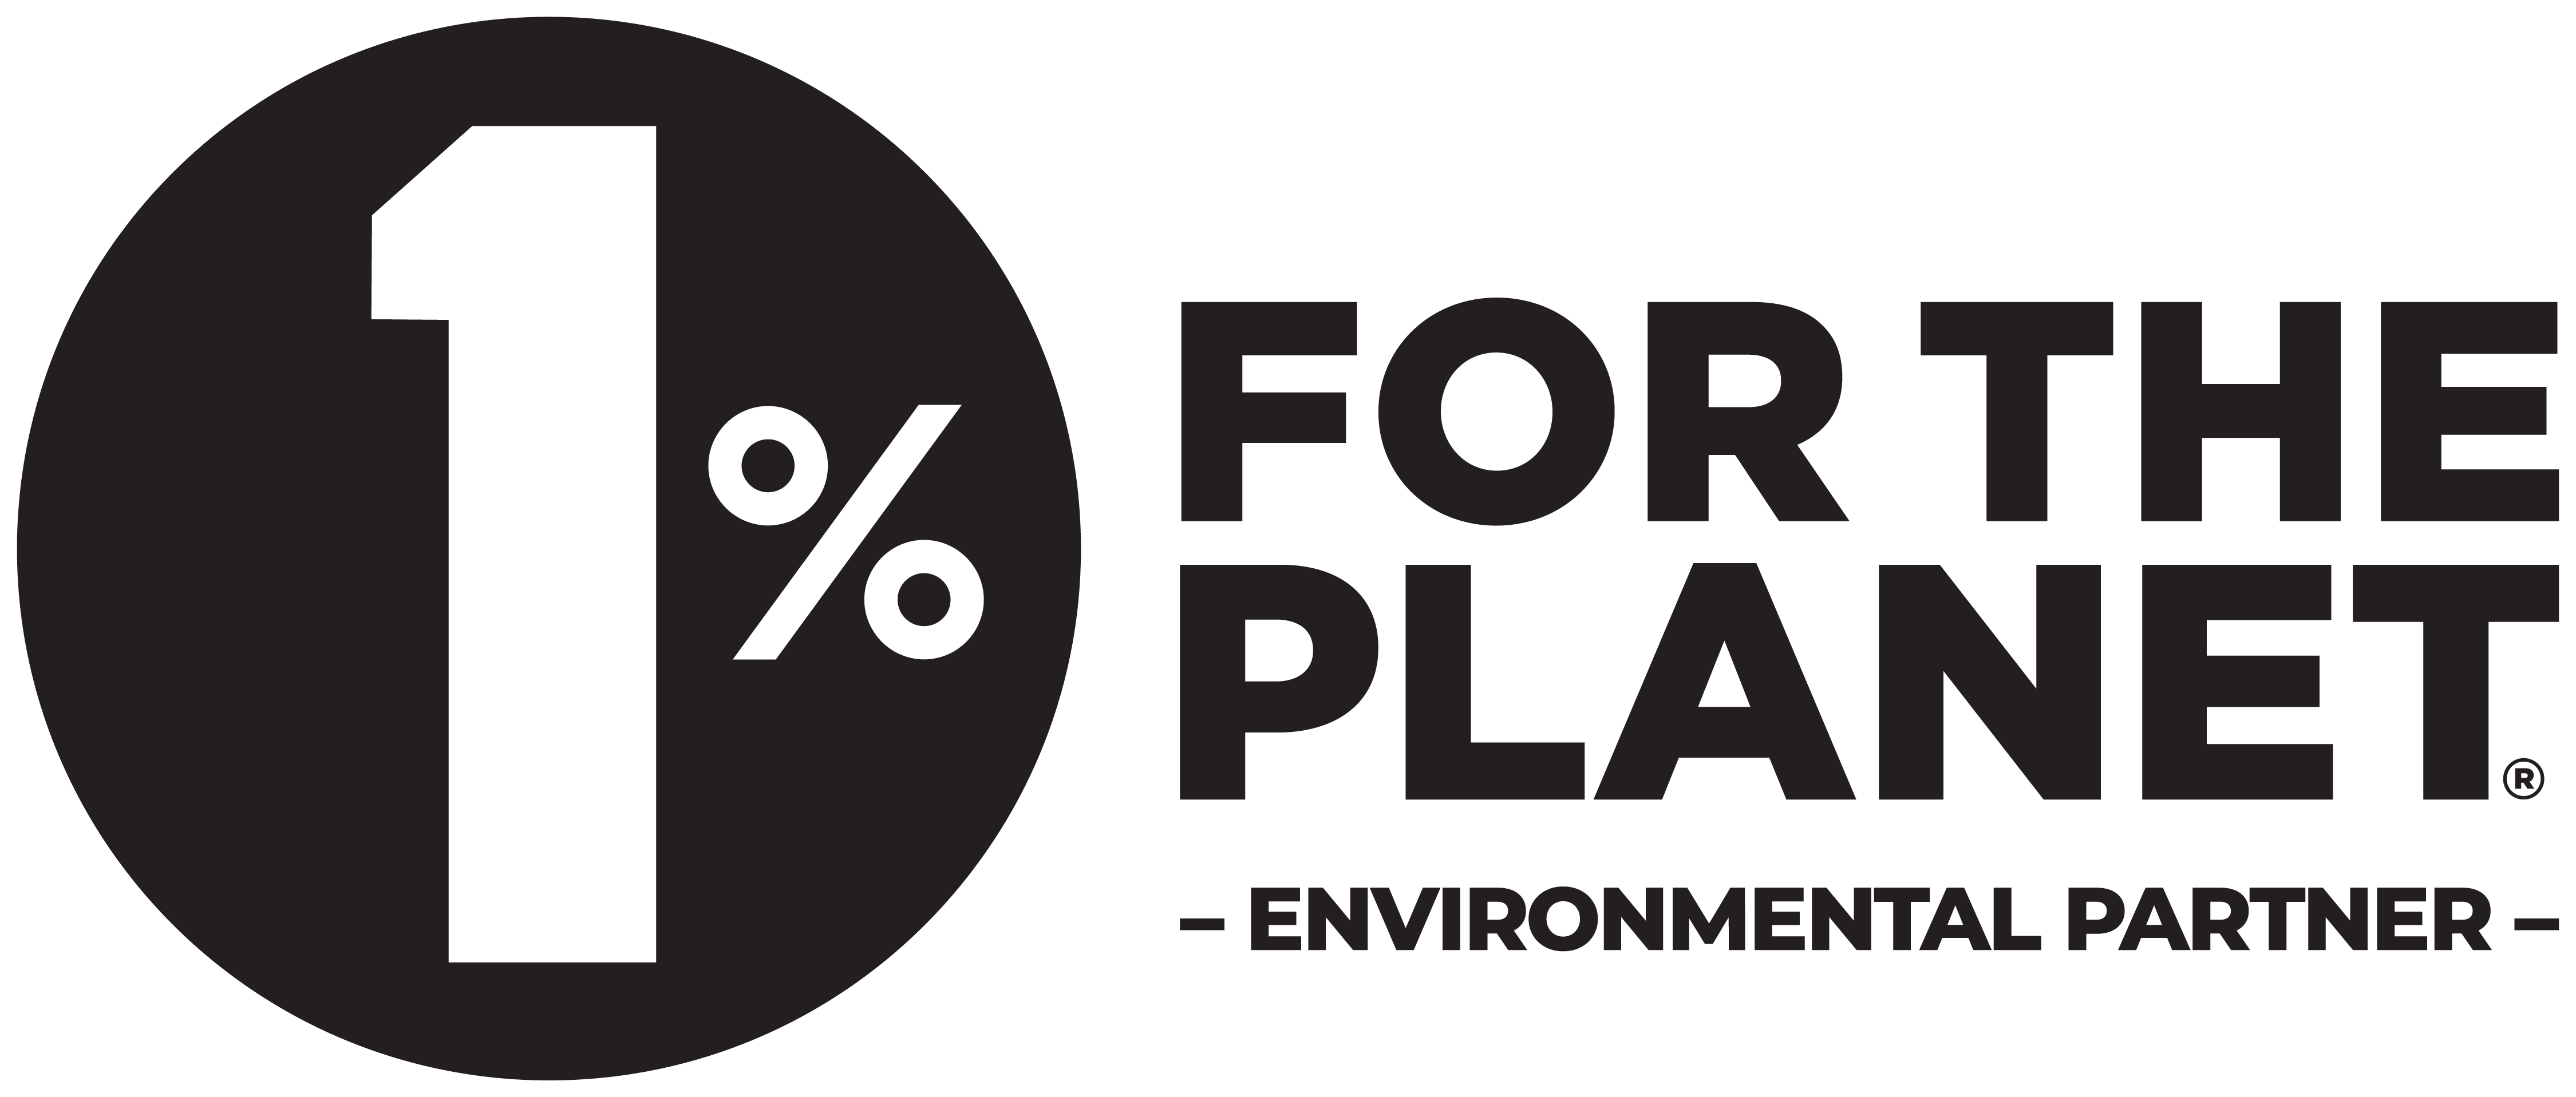 1% for the Planet Environmental Partner logo in black